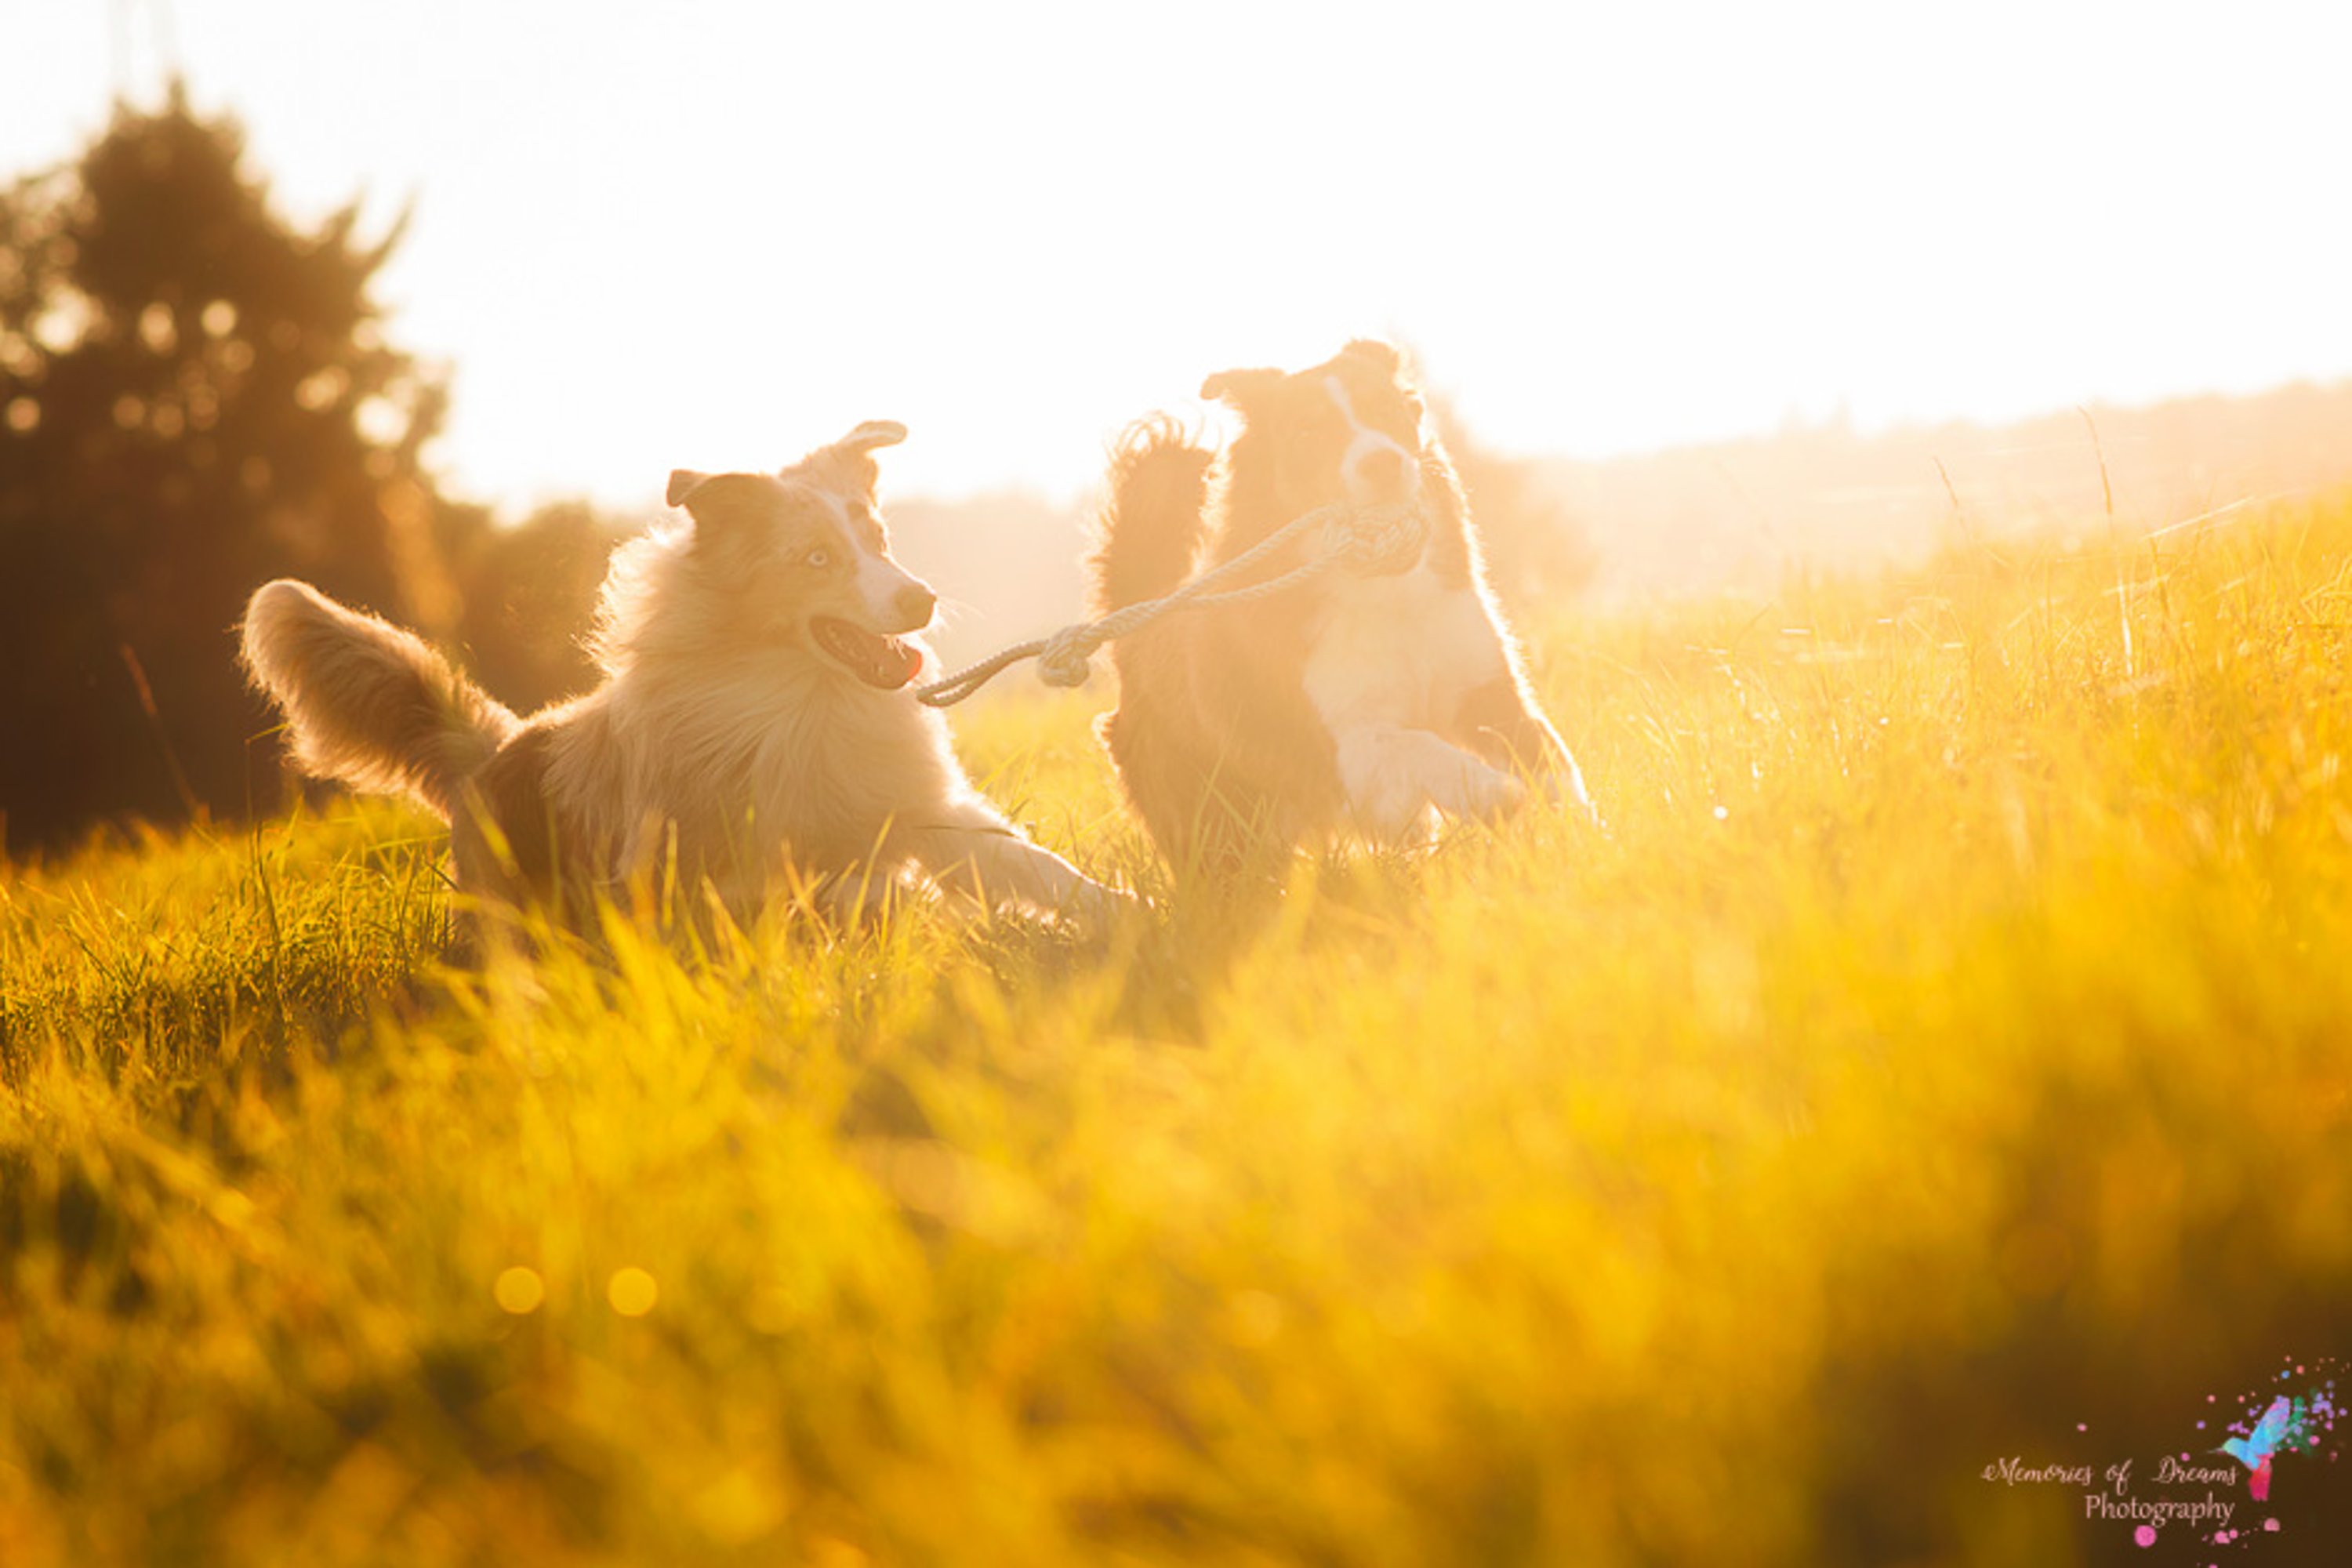 Zwei Hunde laufen mit Spielzeug im Maul im Sonnenlicht auf einer Wiese